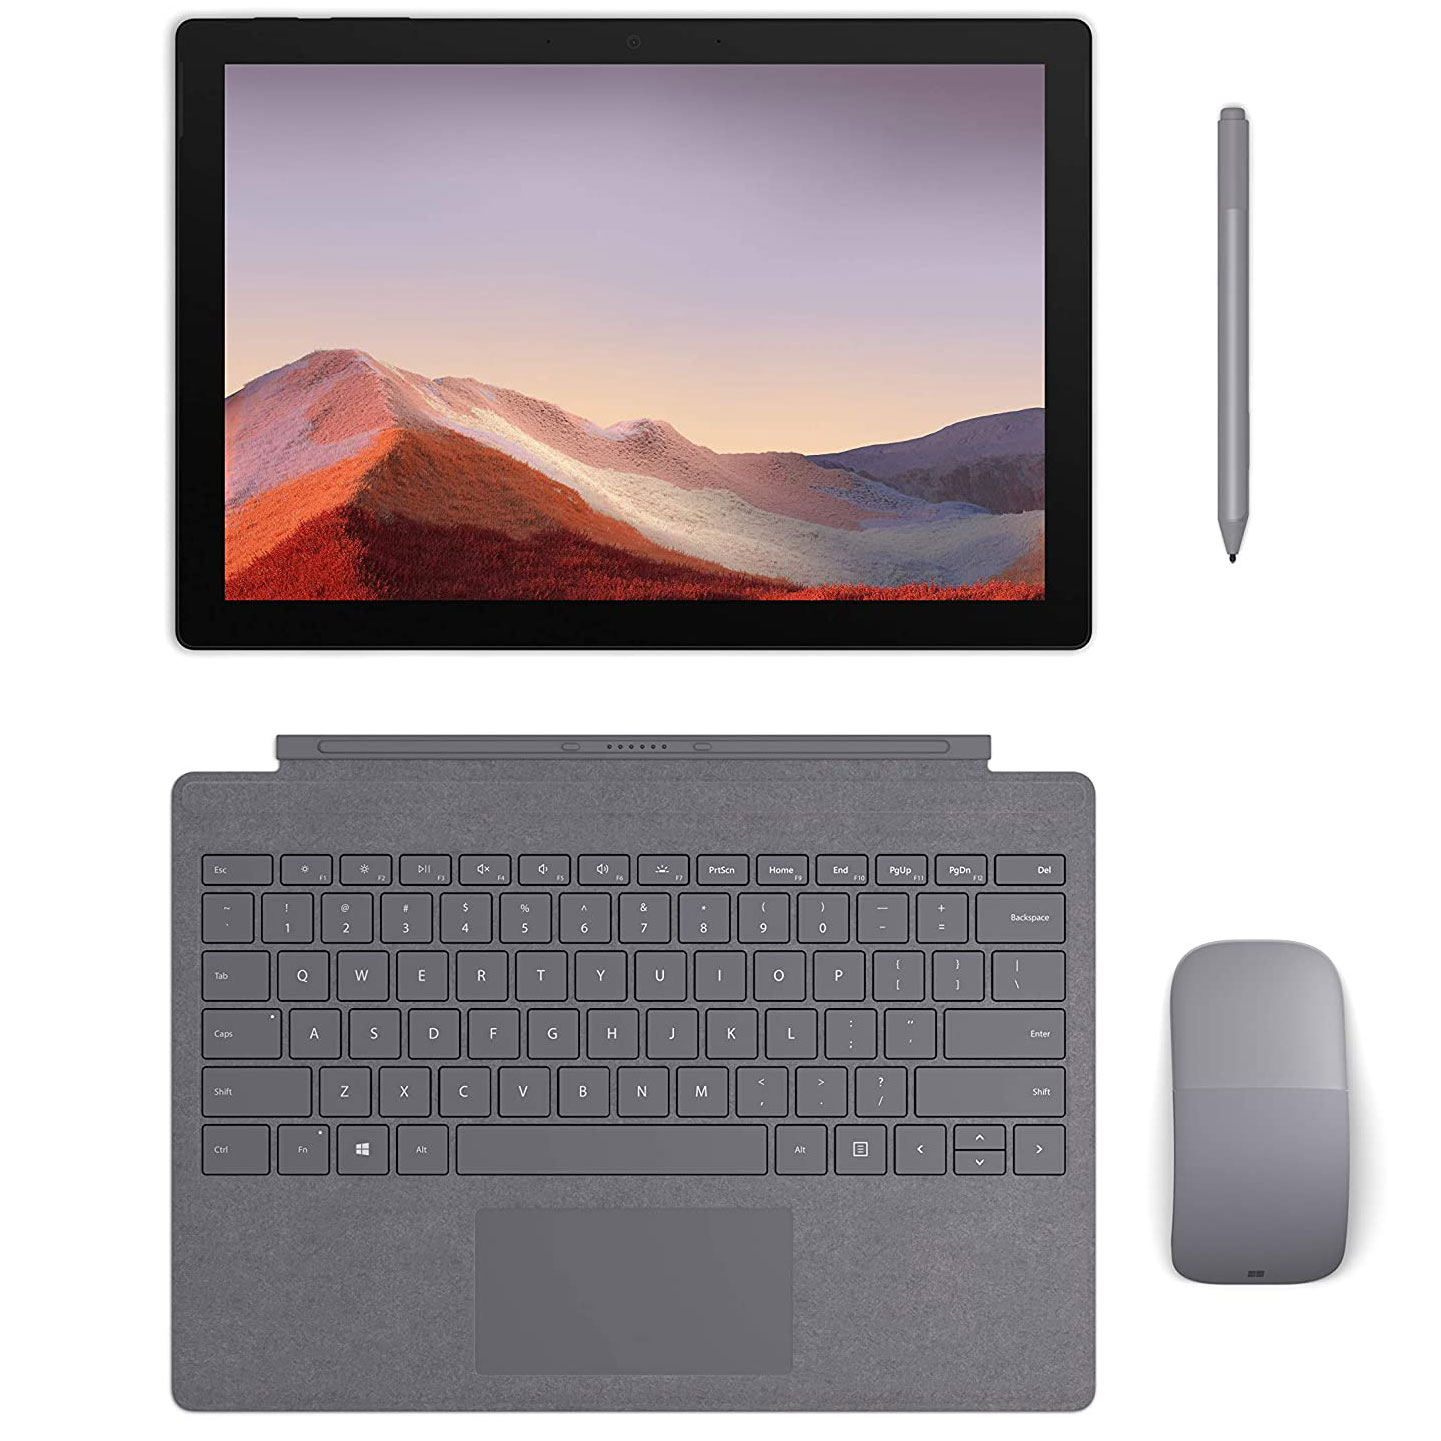 Microsoft Surface Pro 6 Core i5, Ram 8GB, SSD 128GB Like New